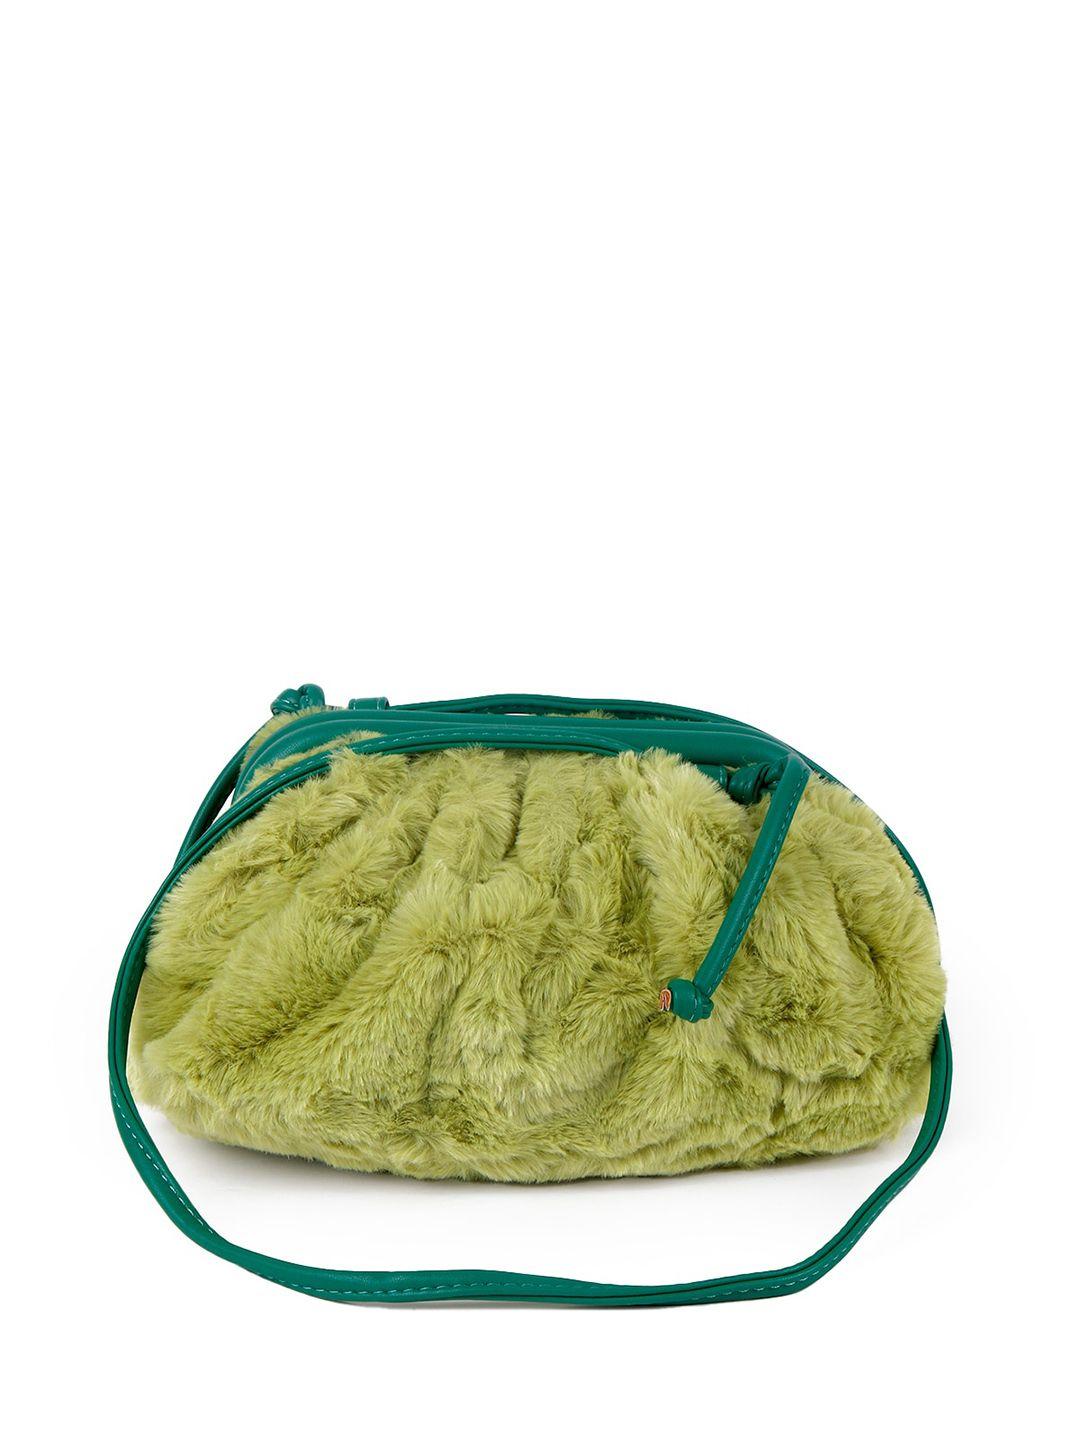 odette green leather swagger sling bag